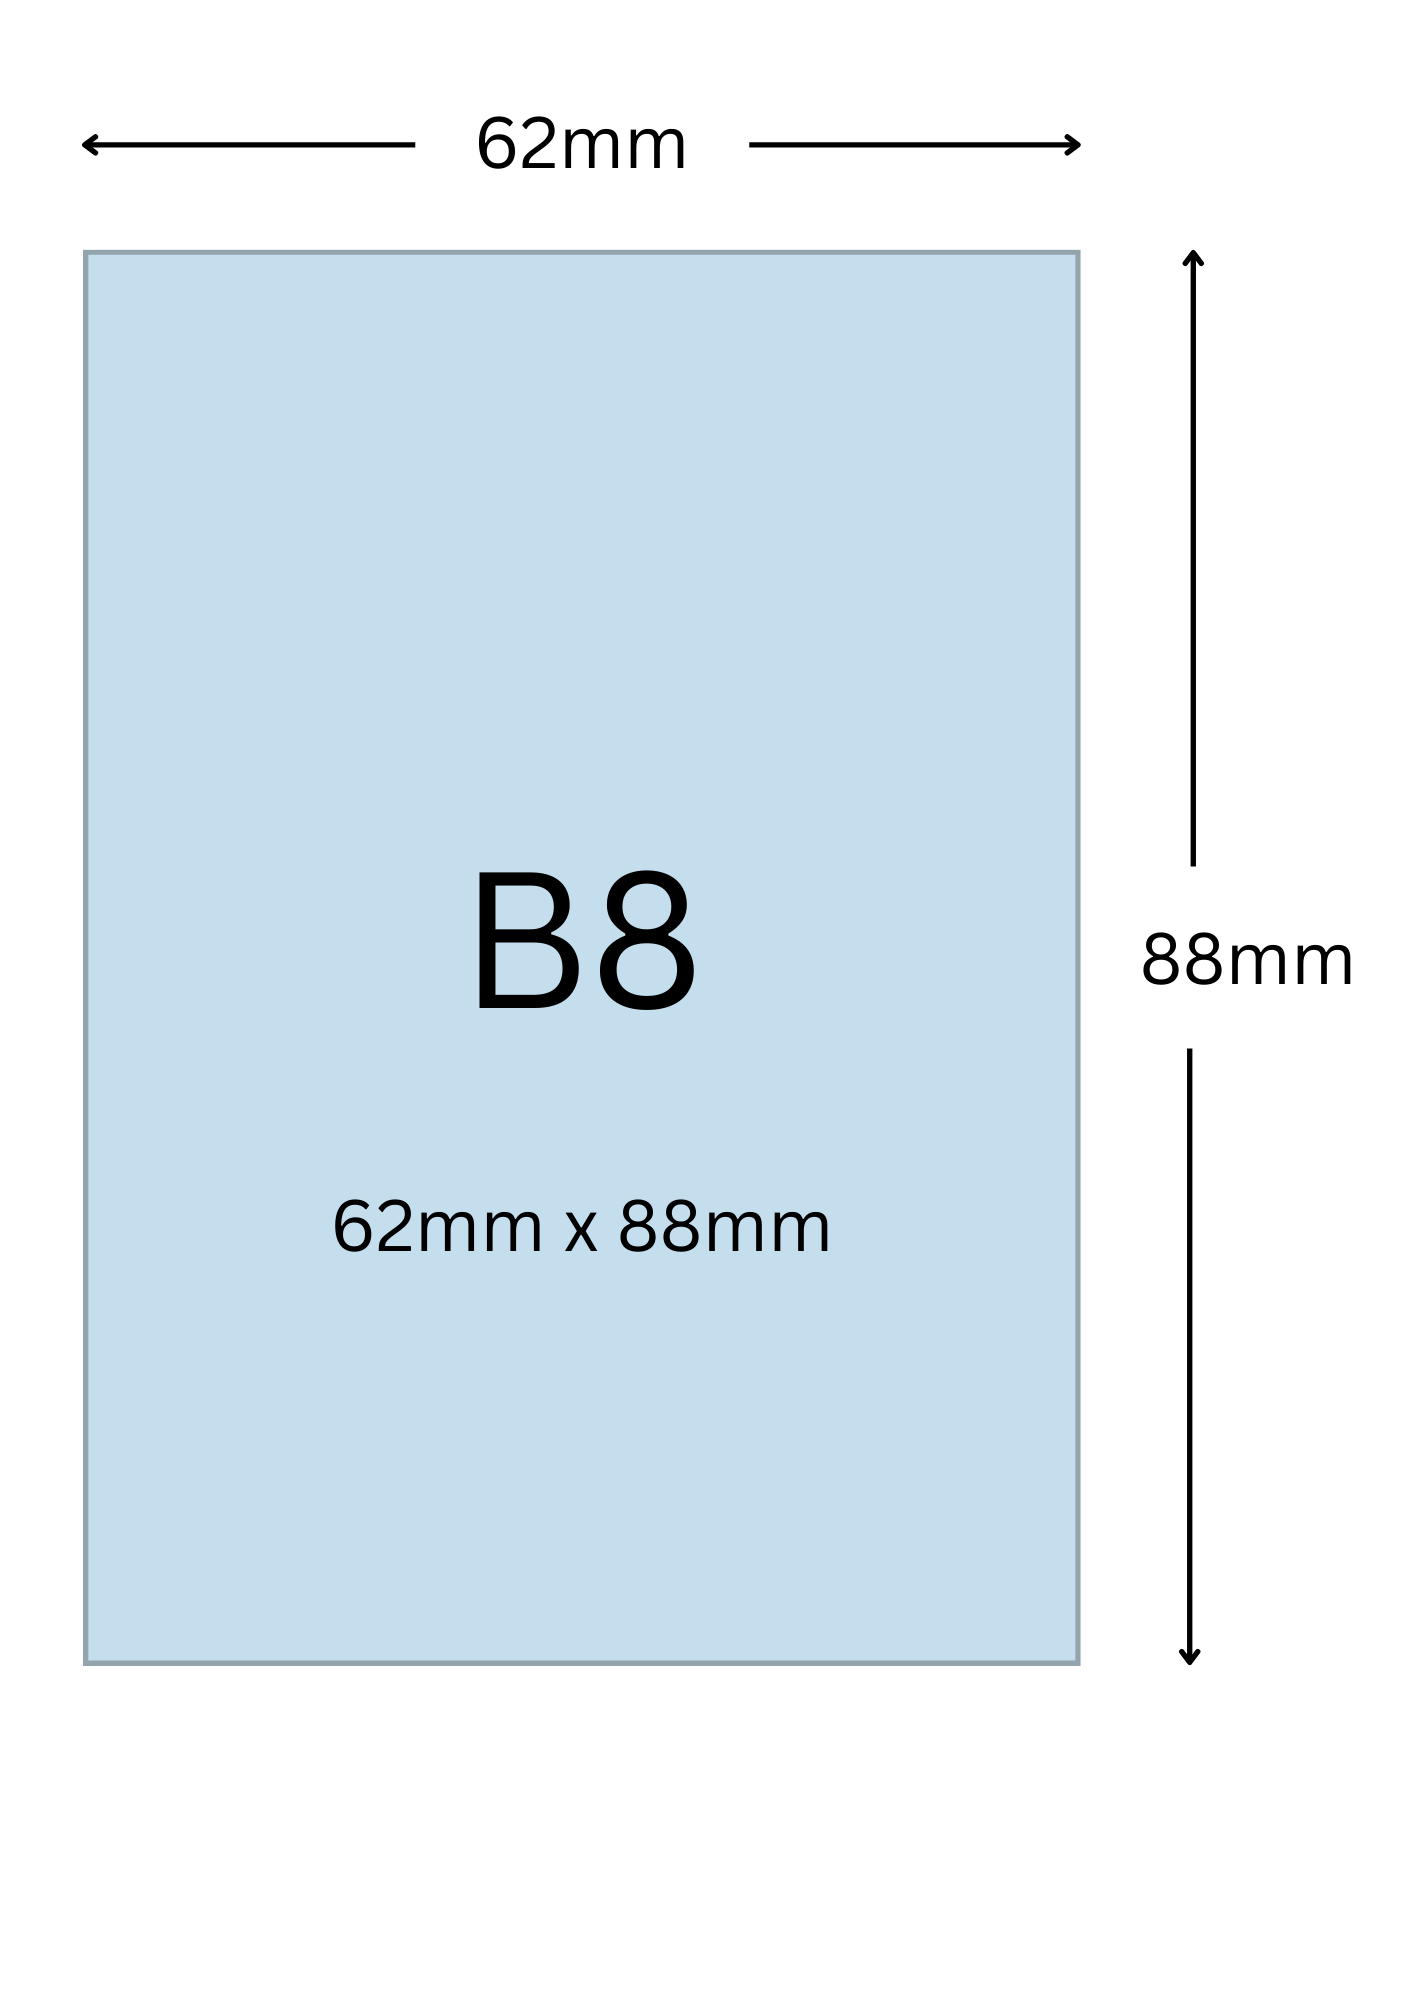 B8尺寸公分, B8紙張尺寸大小, B8紙張對應開數是幾開